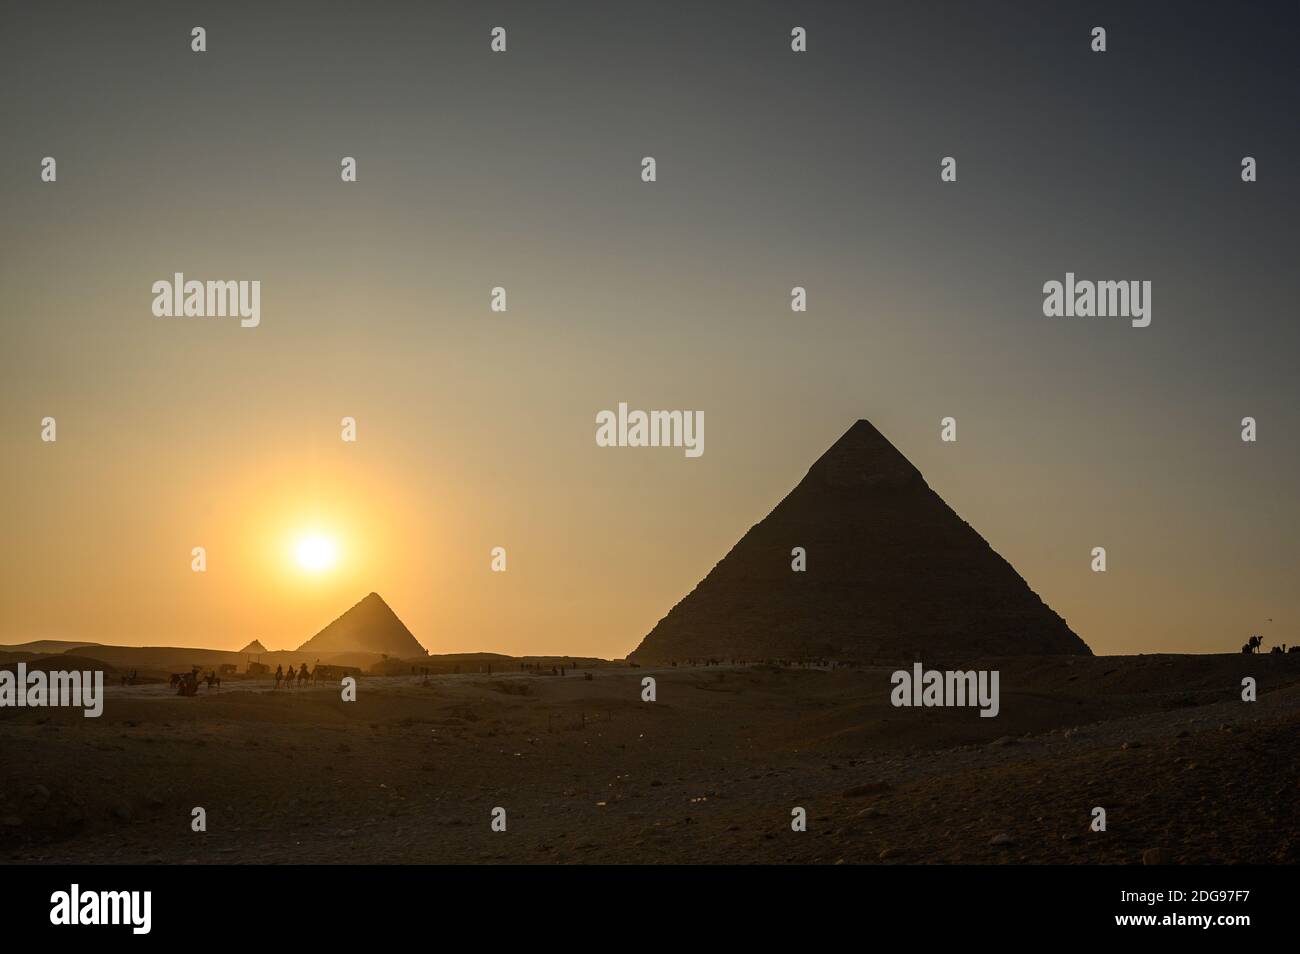 Puesta de sol sobre el complejo Pirámide de Giza con Gran Pirámide de Khufu y Pirámide de Khafre, complejo Pirámide de Giza, Giza, el Cairo, Egipto Foto de stock